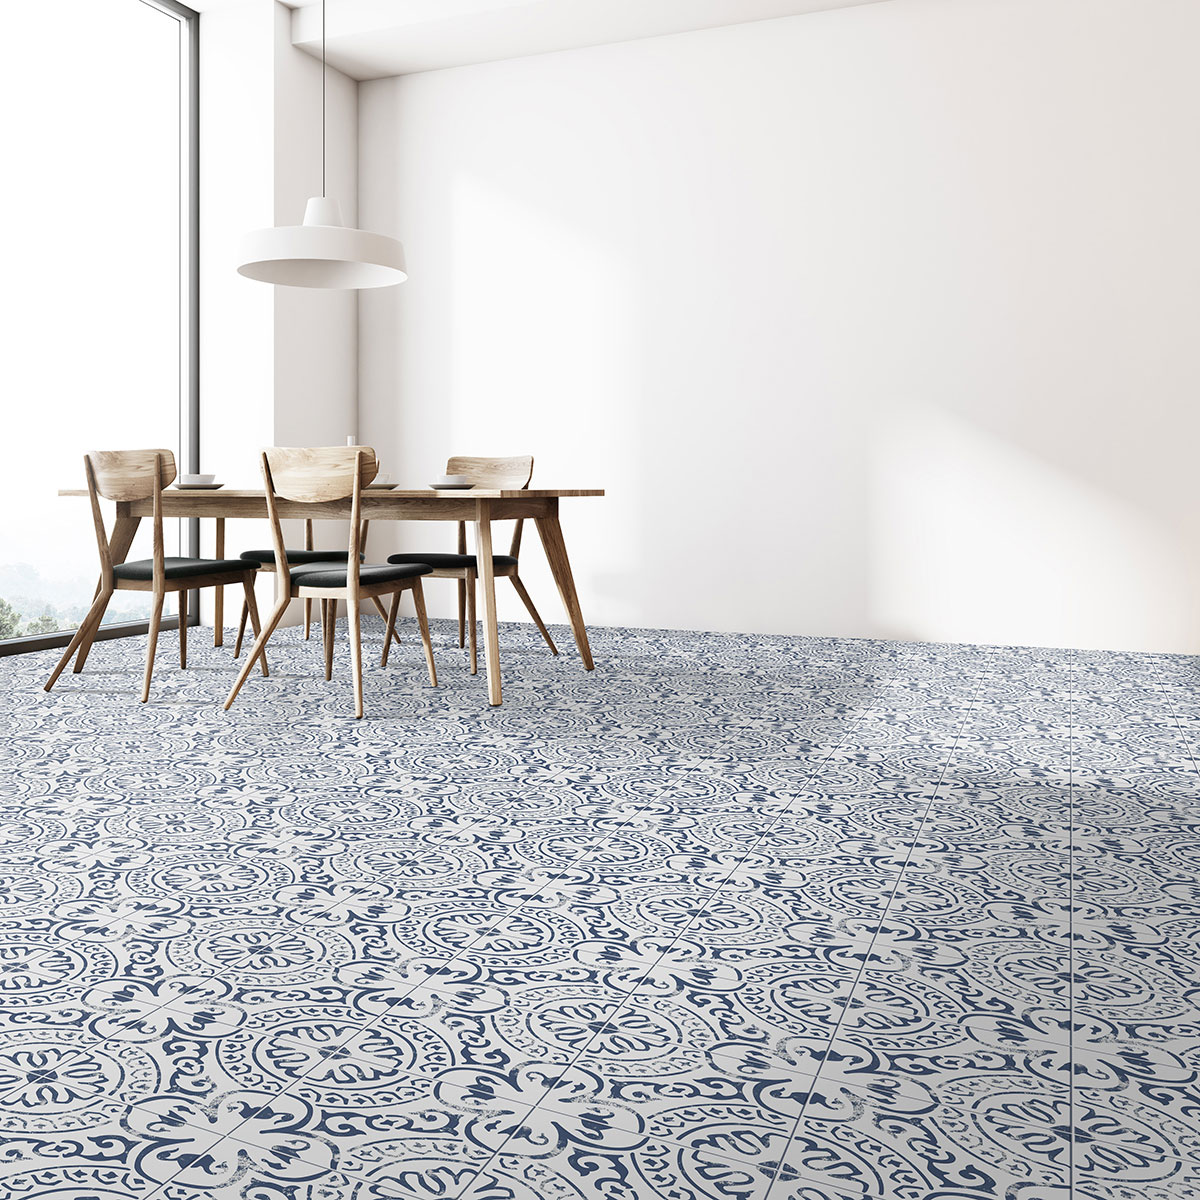 Kenzzi Indigo Encaustic Tile dining room floor